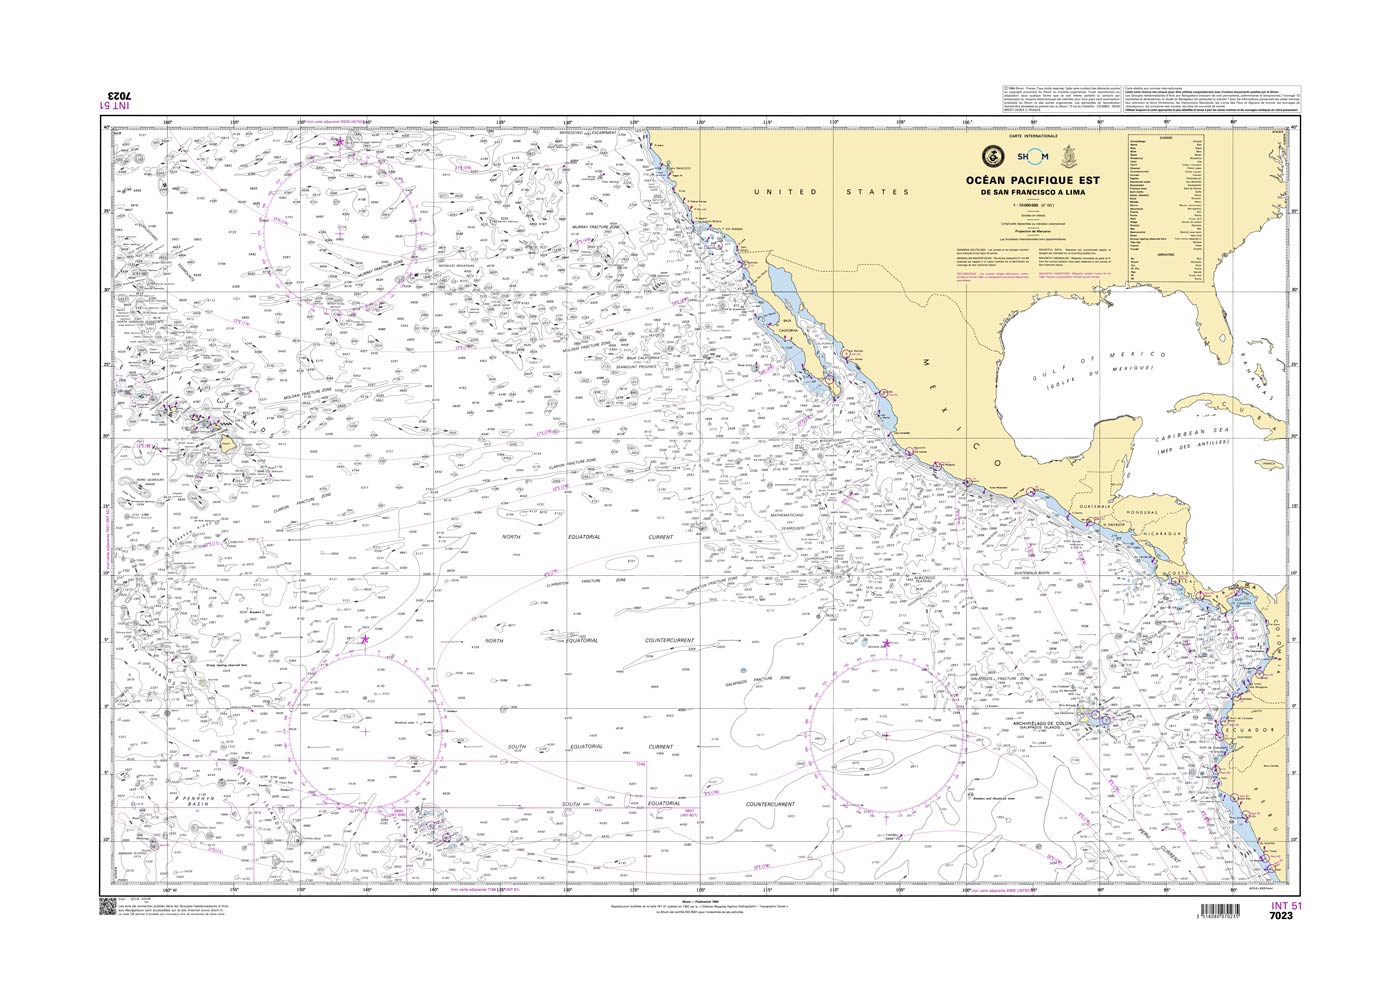 Shom 7023 - INT 51 Océan Pacifique Est - De San Francisco à Lima